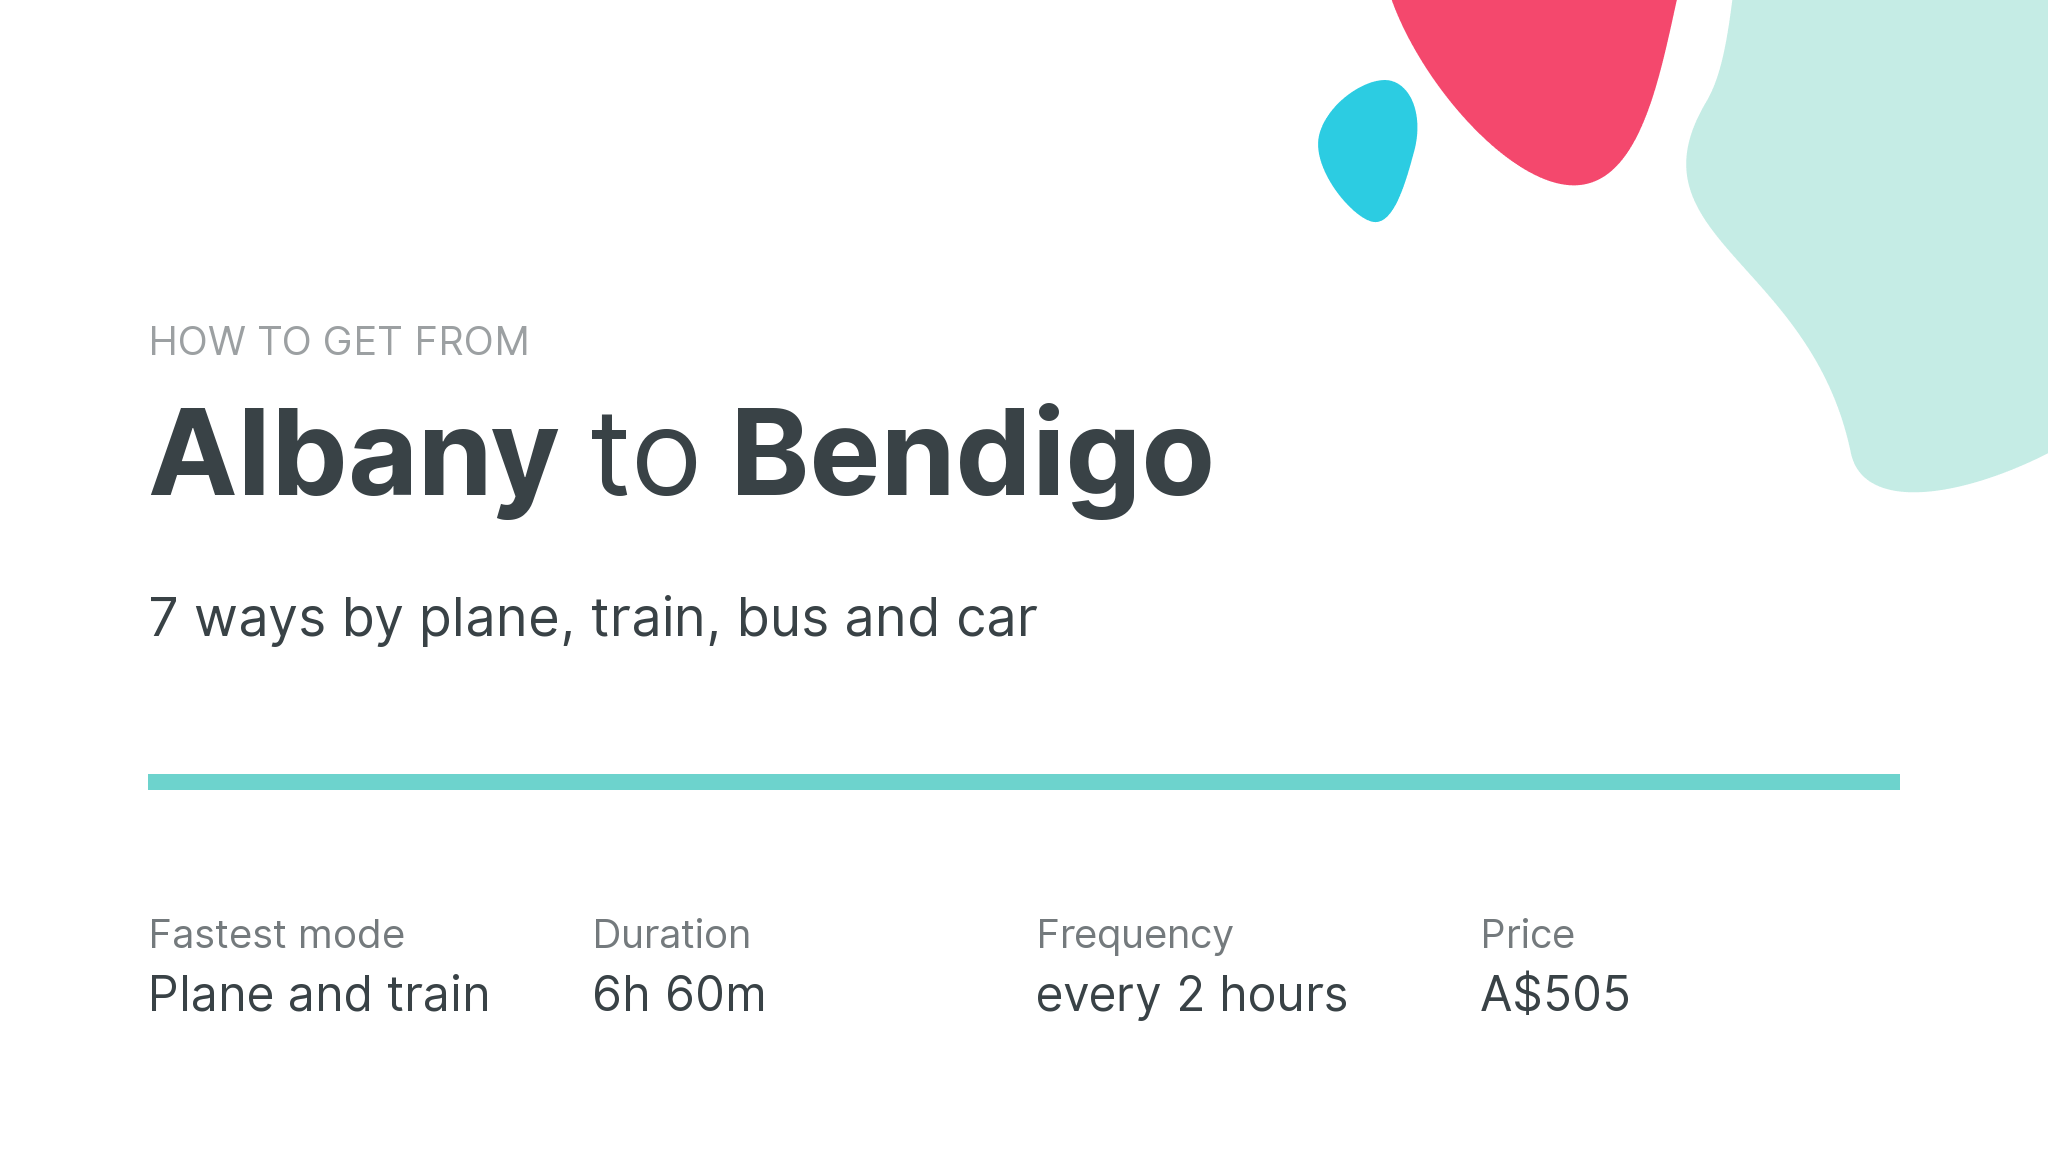 How do I get from Albany to Bendigo